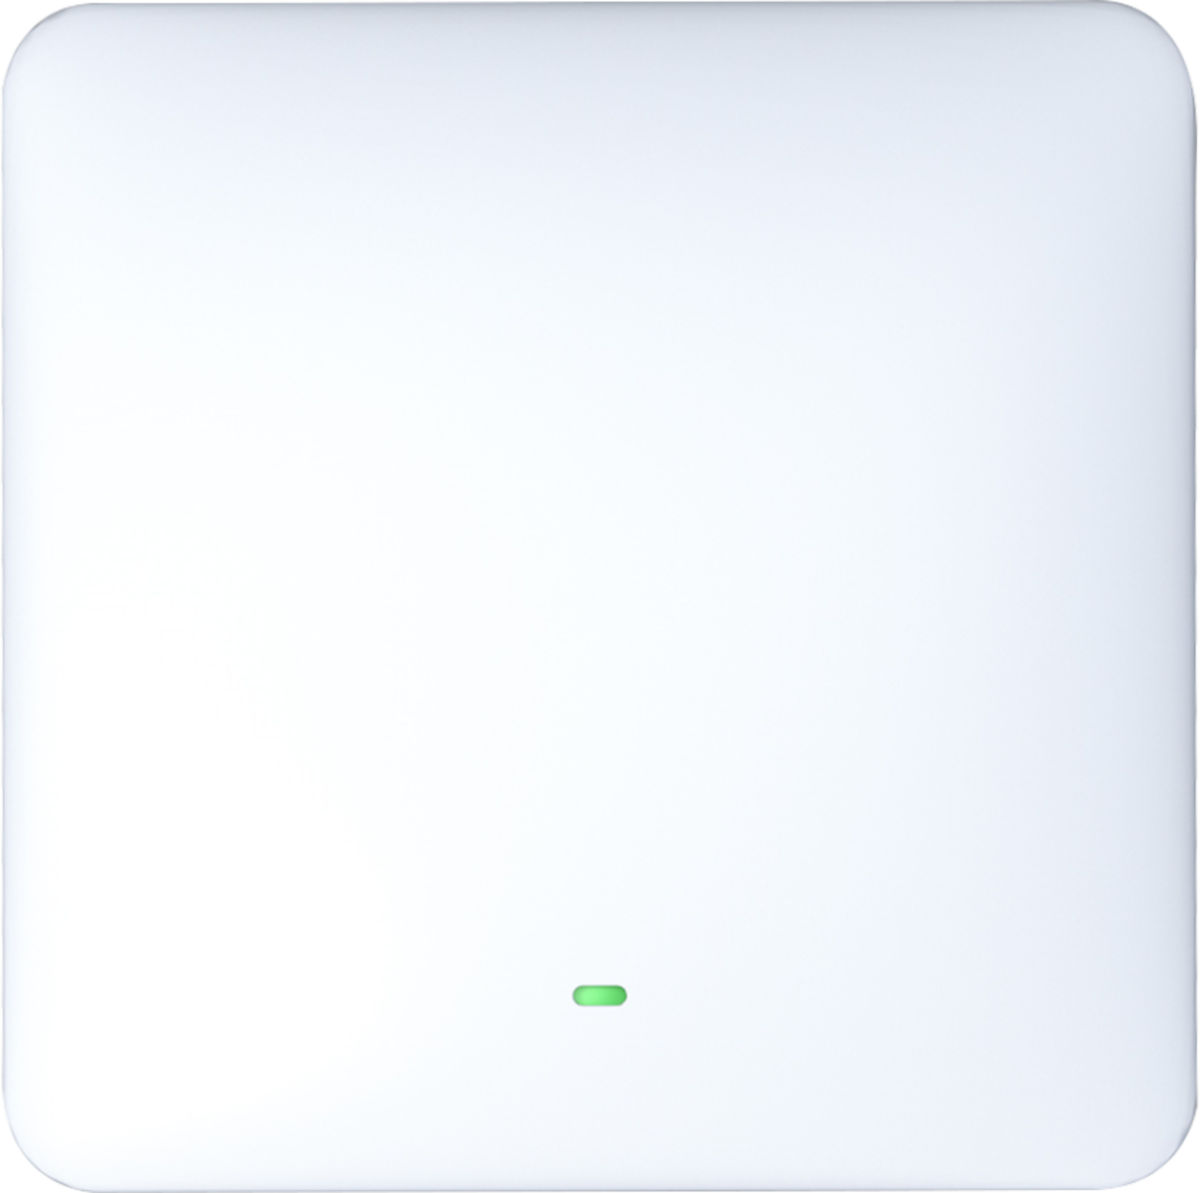 Möhlenhoff Alpha Smartware IoT Gateway, Frontansicht mit grün leuchtendem LED-Licht vor weißem Grund